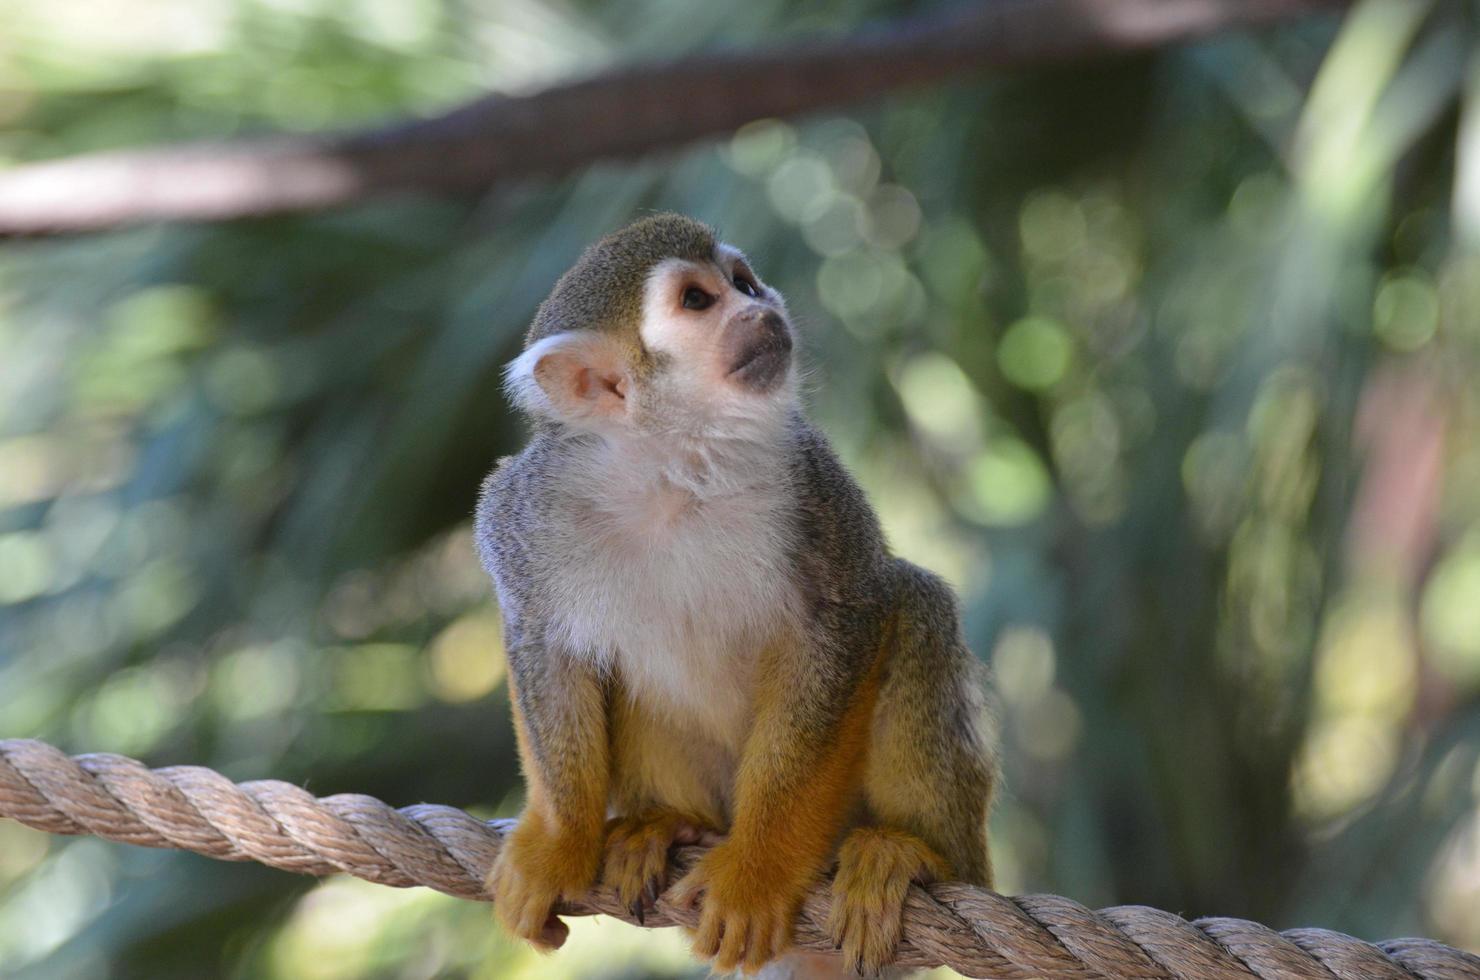 cara asombrosa de un mono ardilla sentado en una cuerda foto